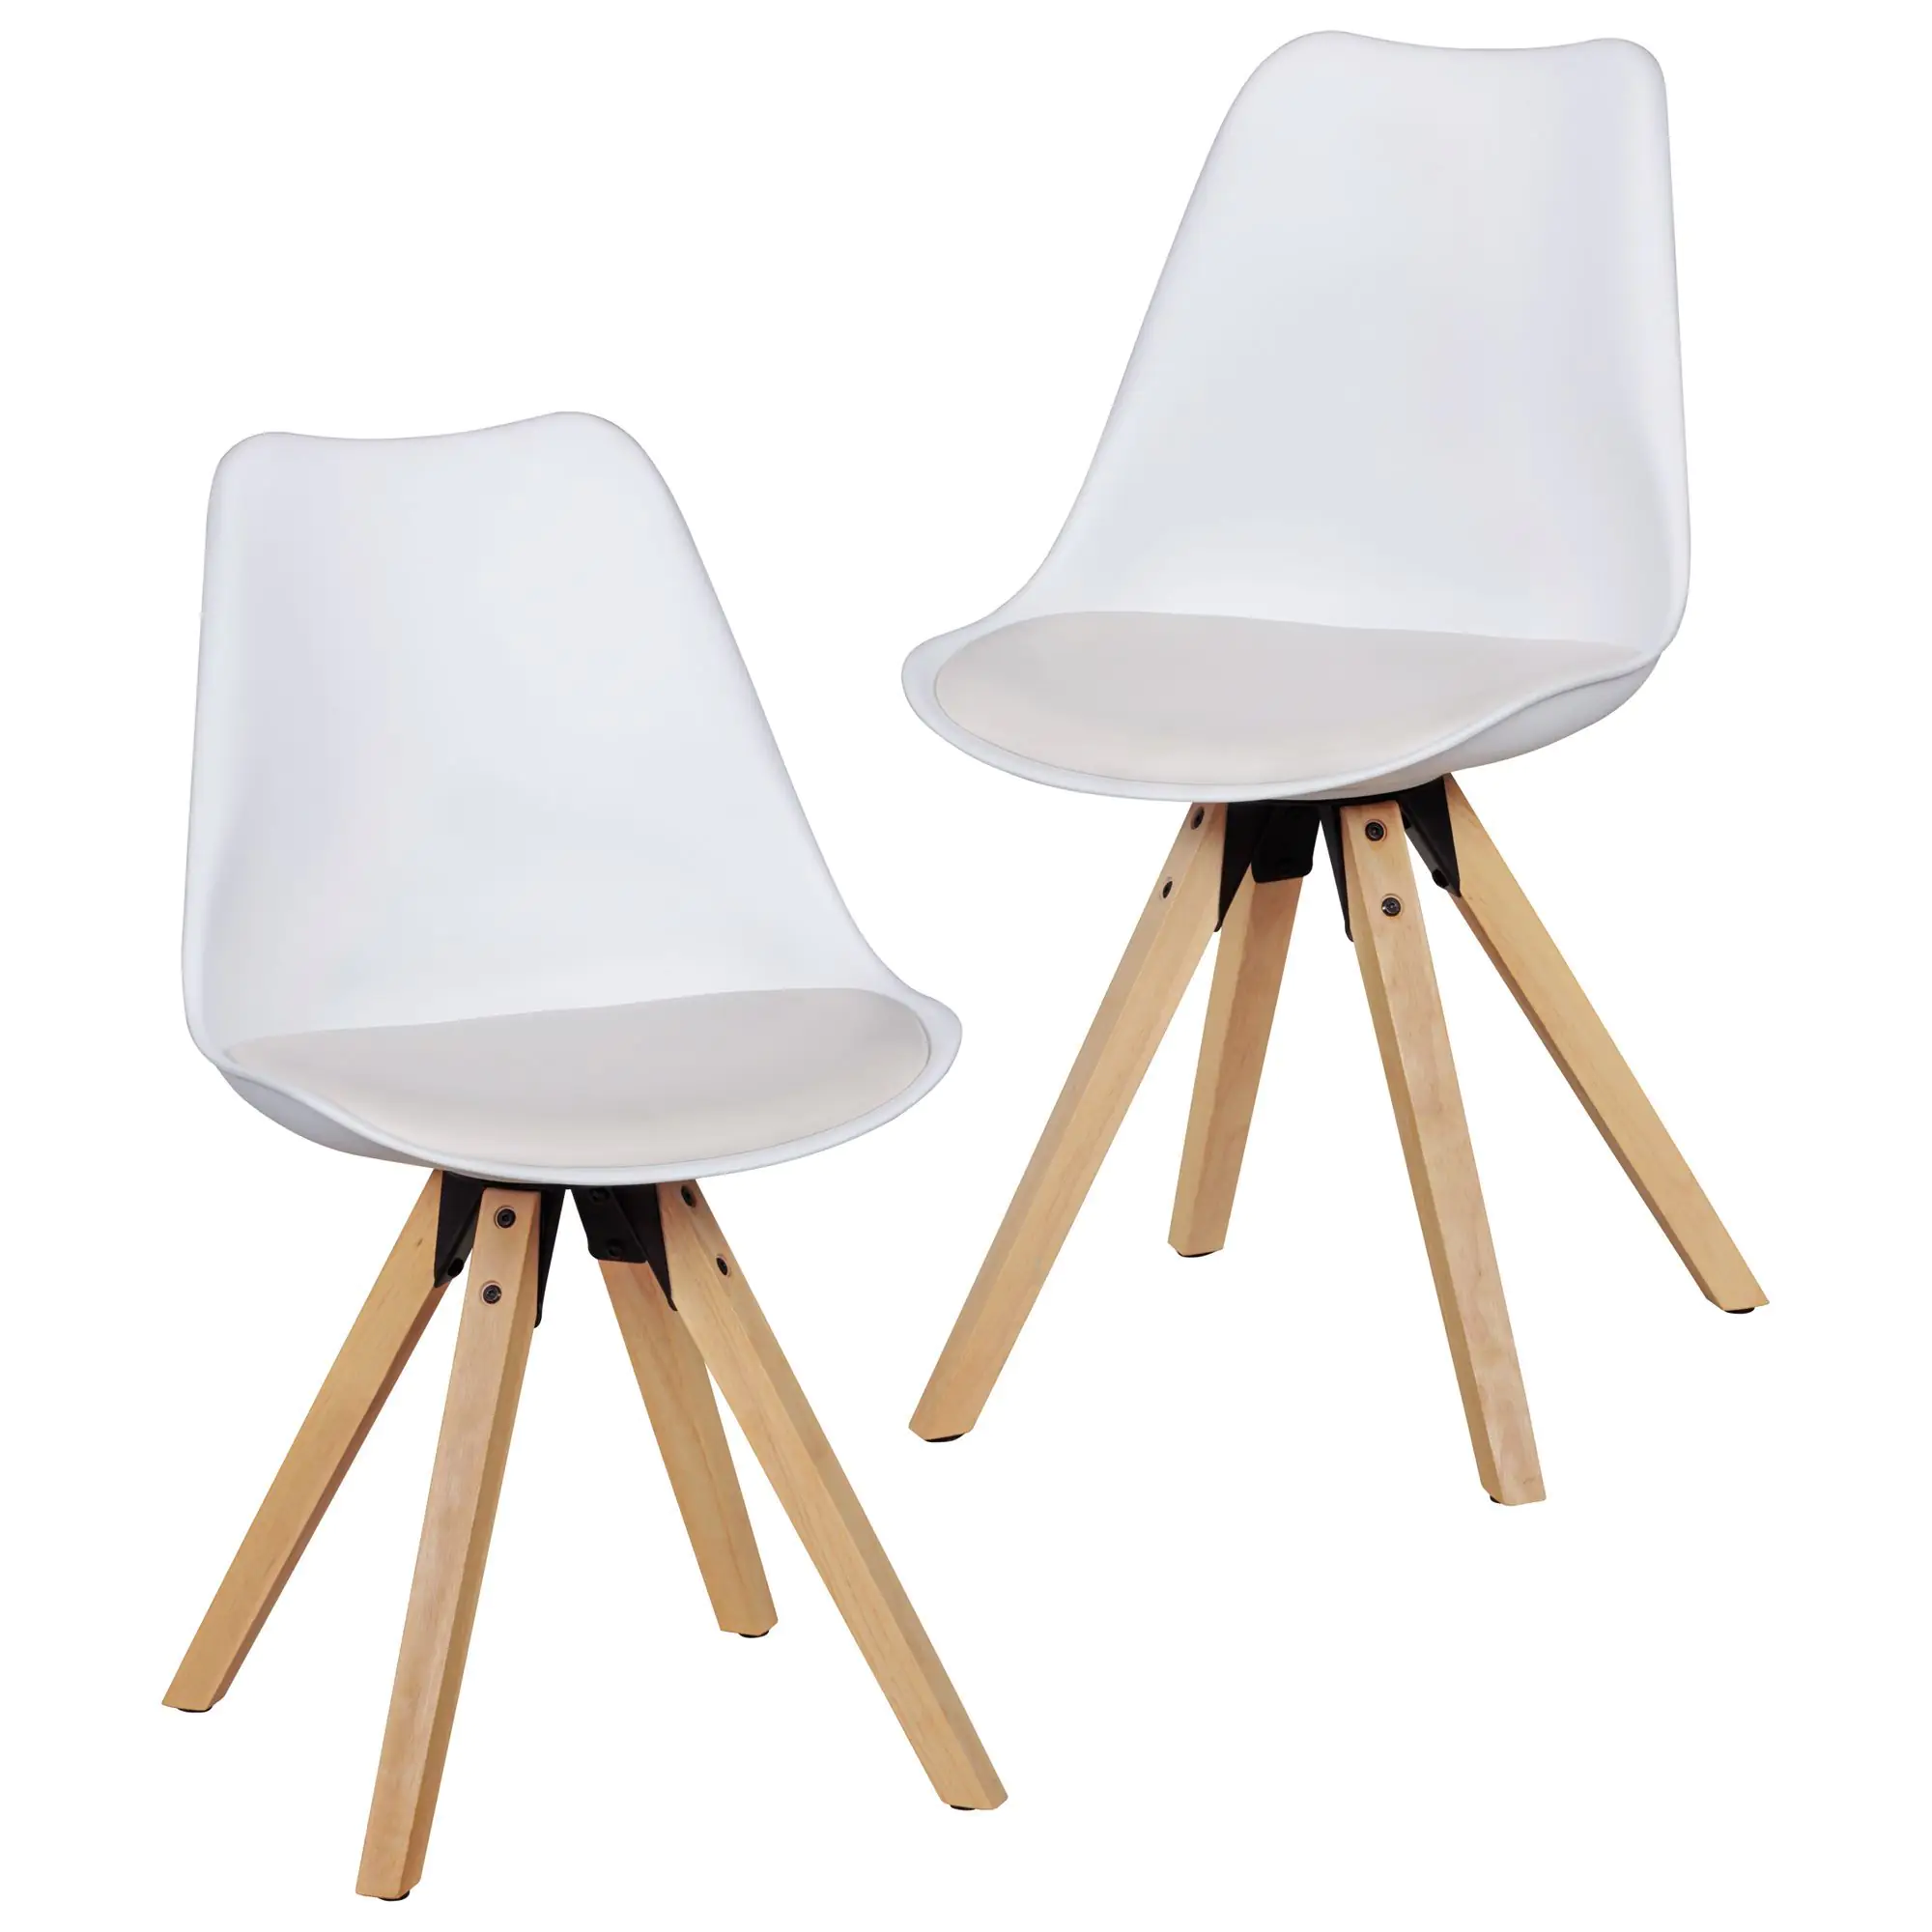 Stuhl 2er Set im Skandinavischen Stil, Farbe: Weiß / Eiche, mit  freundlichen Farben und hellem Holz